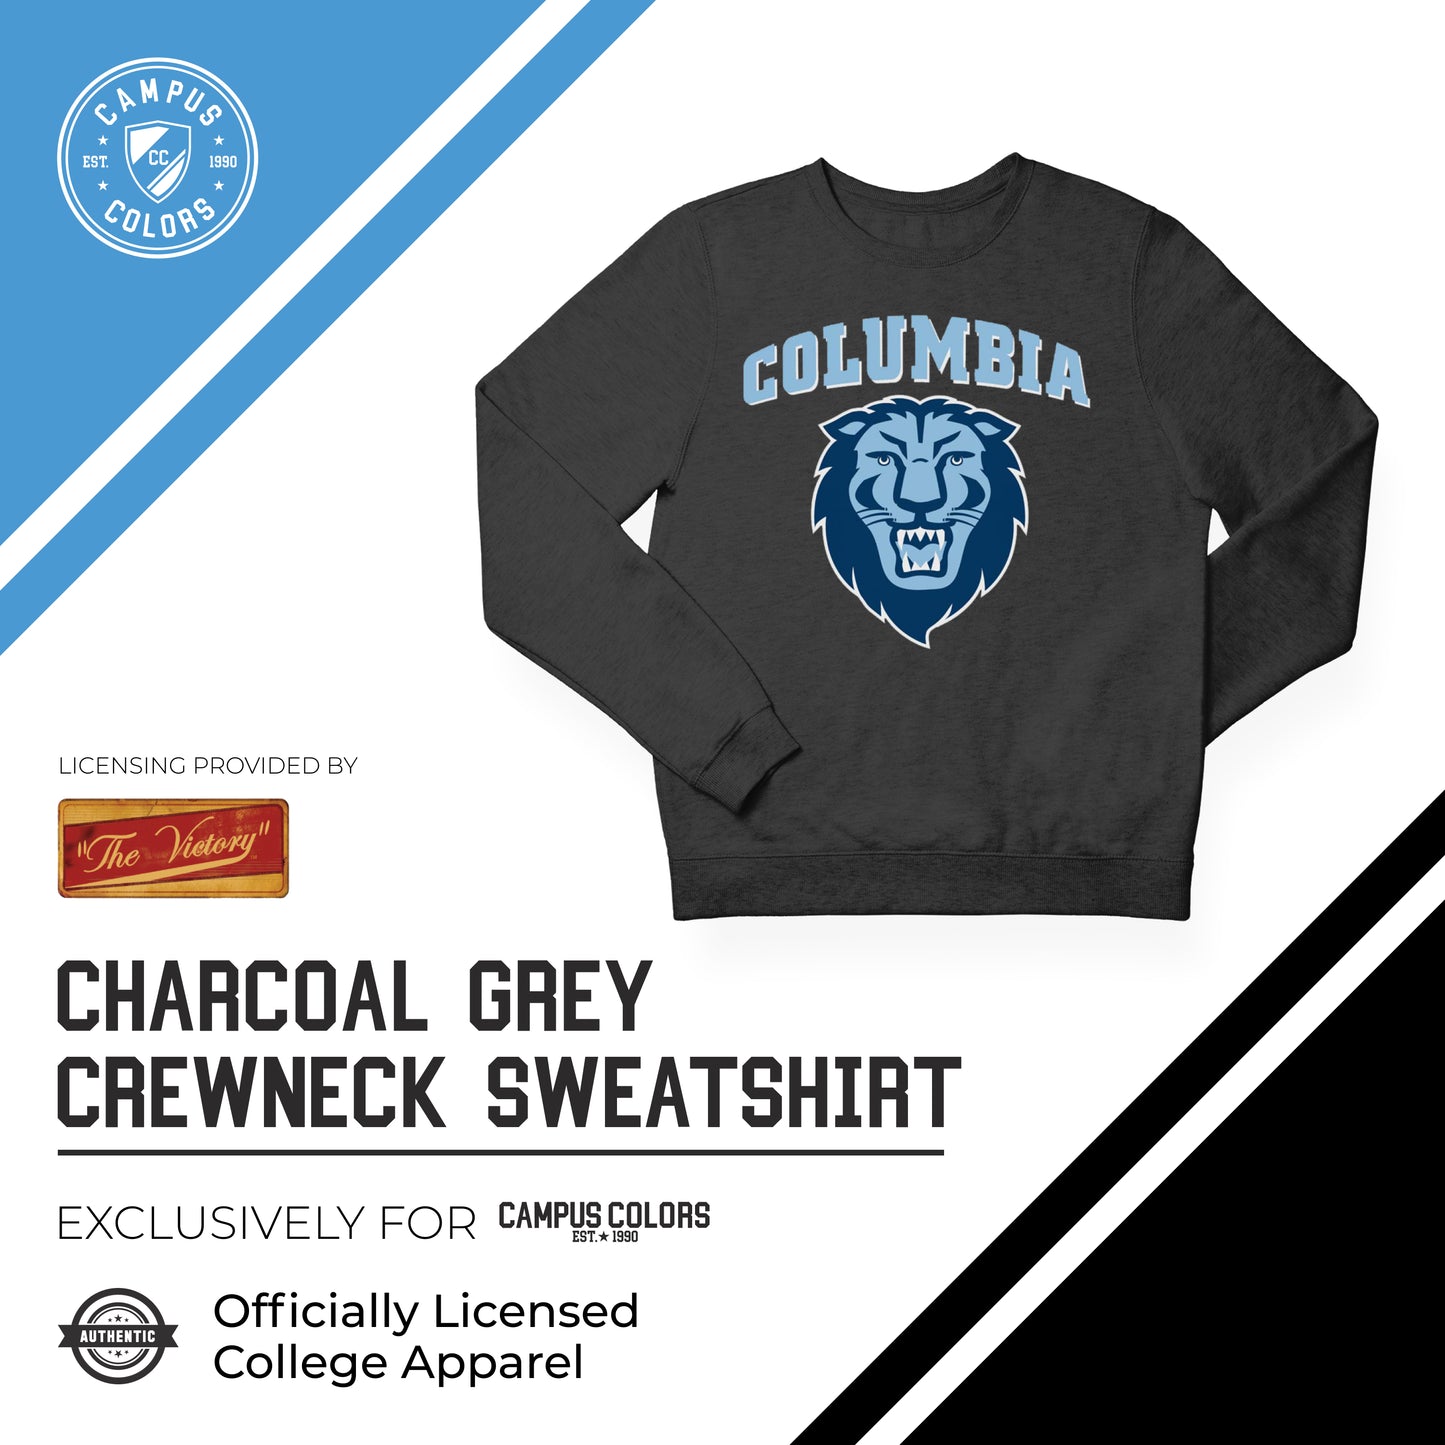 Columbia Lions NCAA Adult Charcoal Crewneck Fleece Sweatshirt - Charcoal